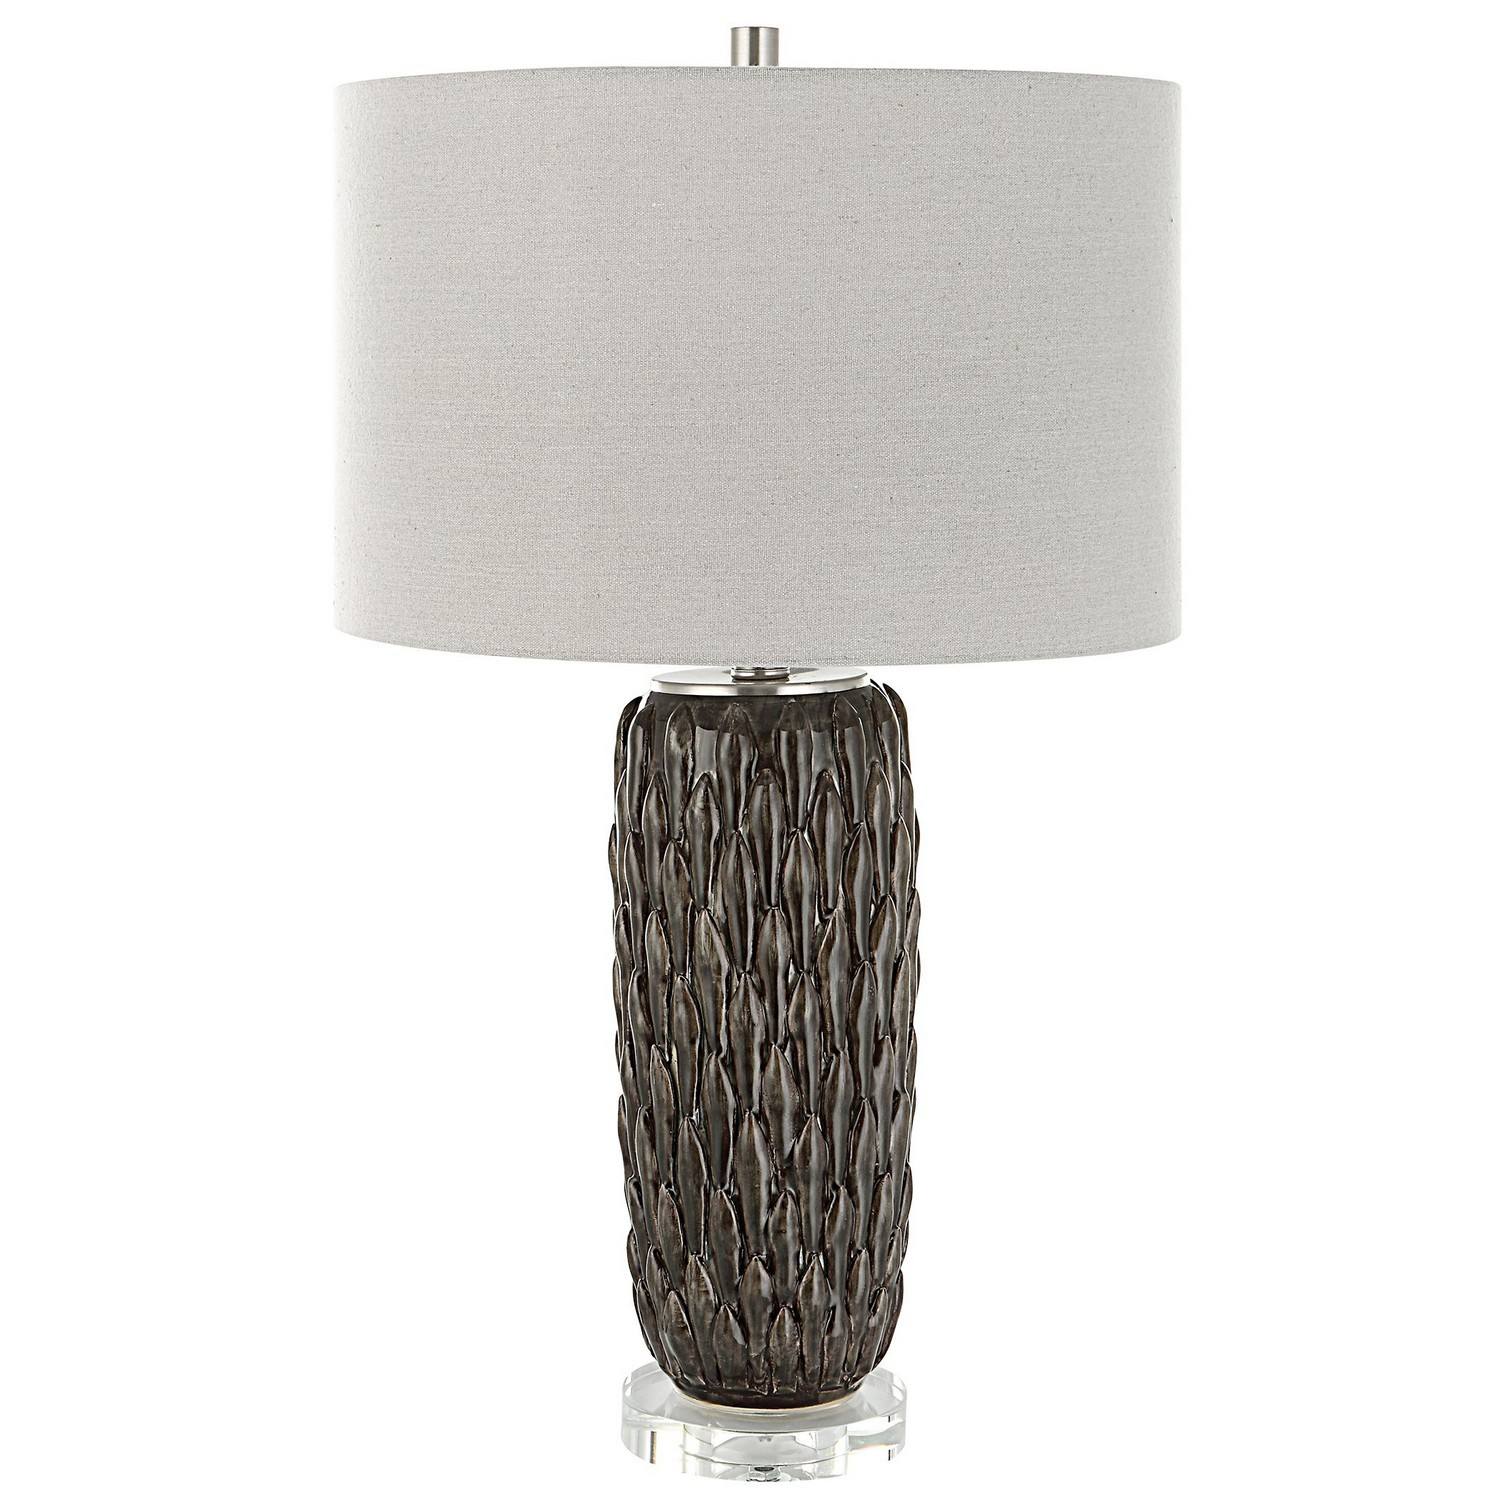 Uttermost Nettle Table Lamp - Textured